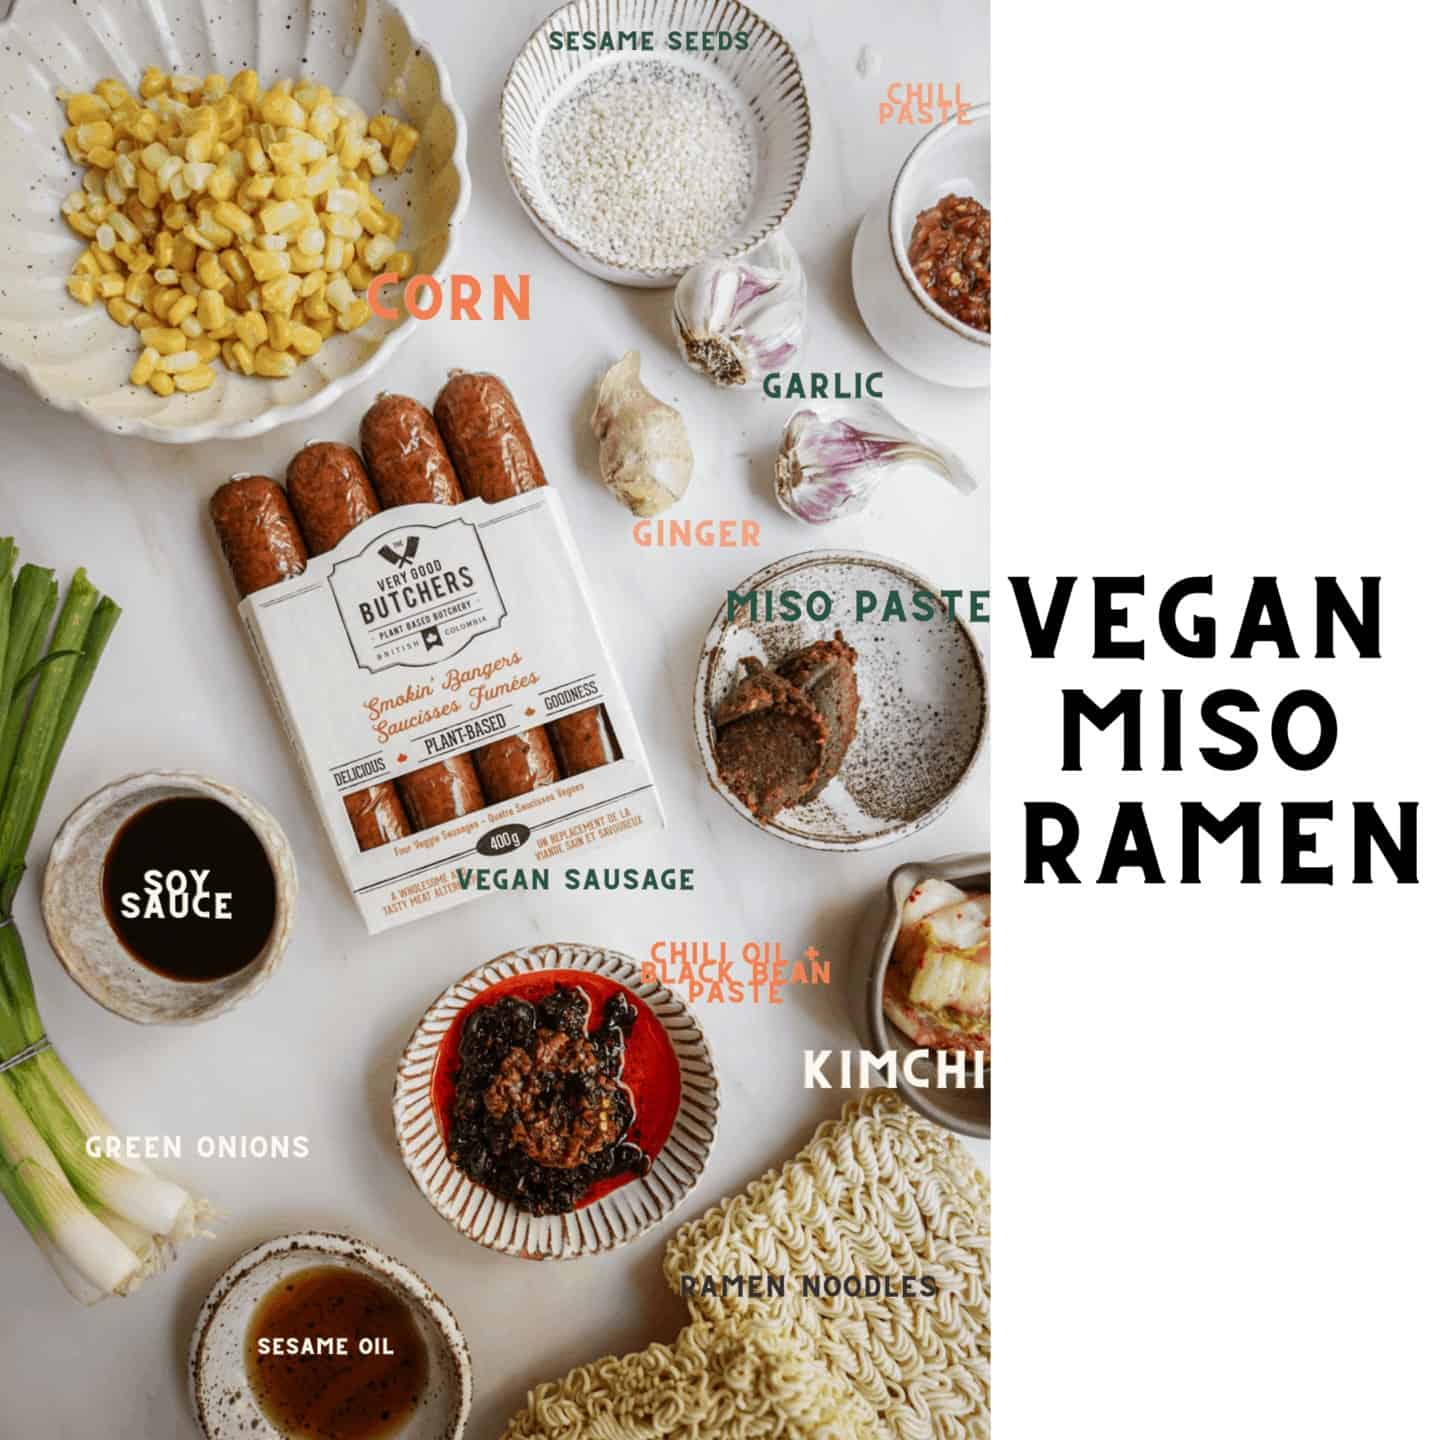 Ingredients to make a vegan miso ramen bowl